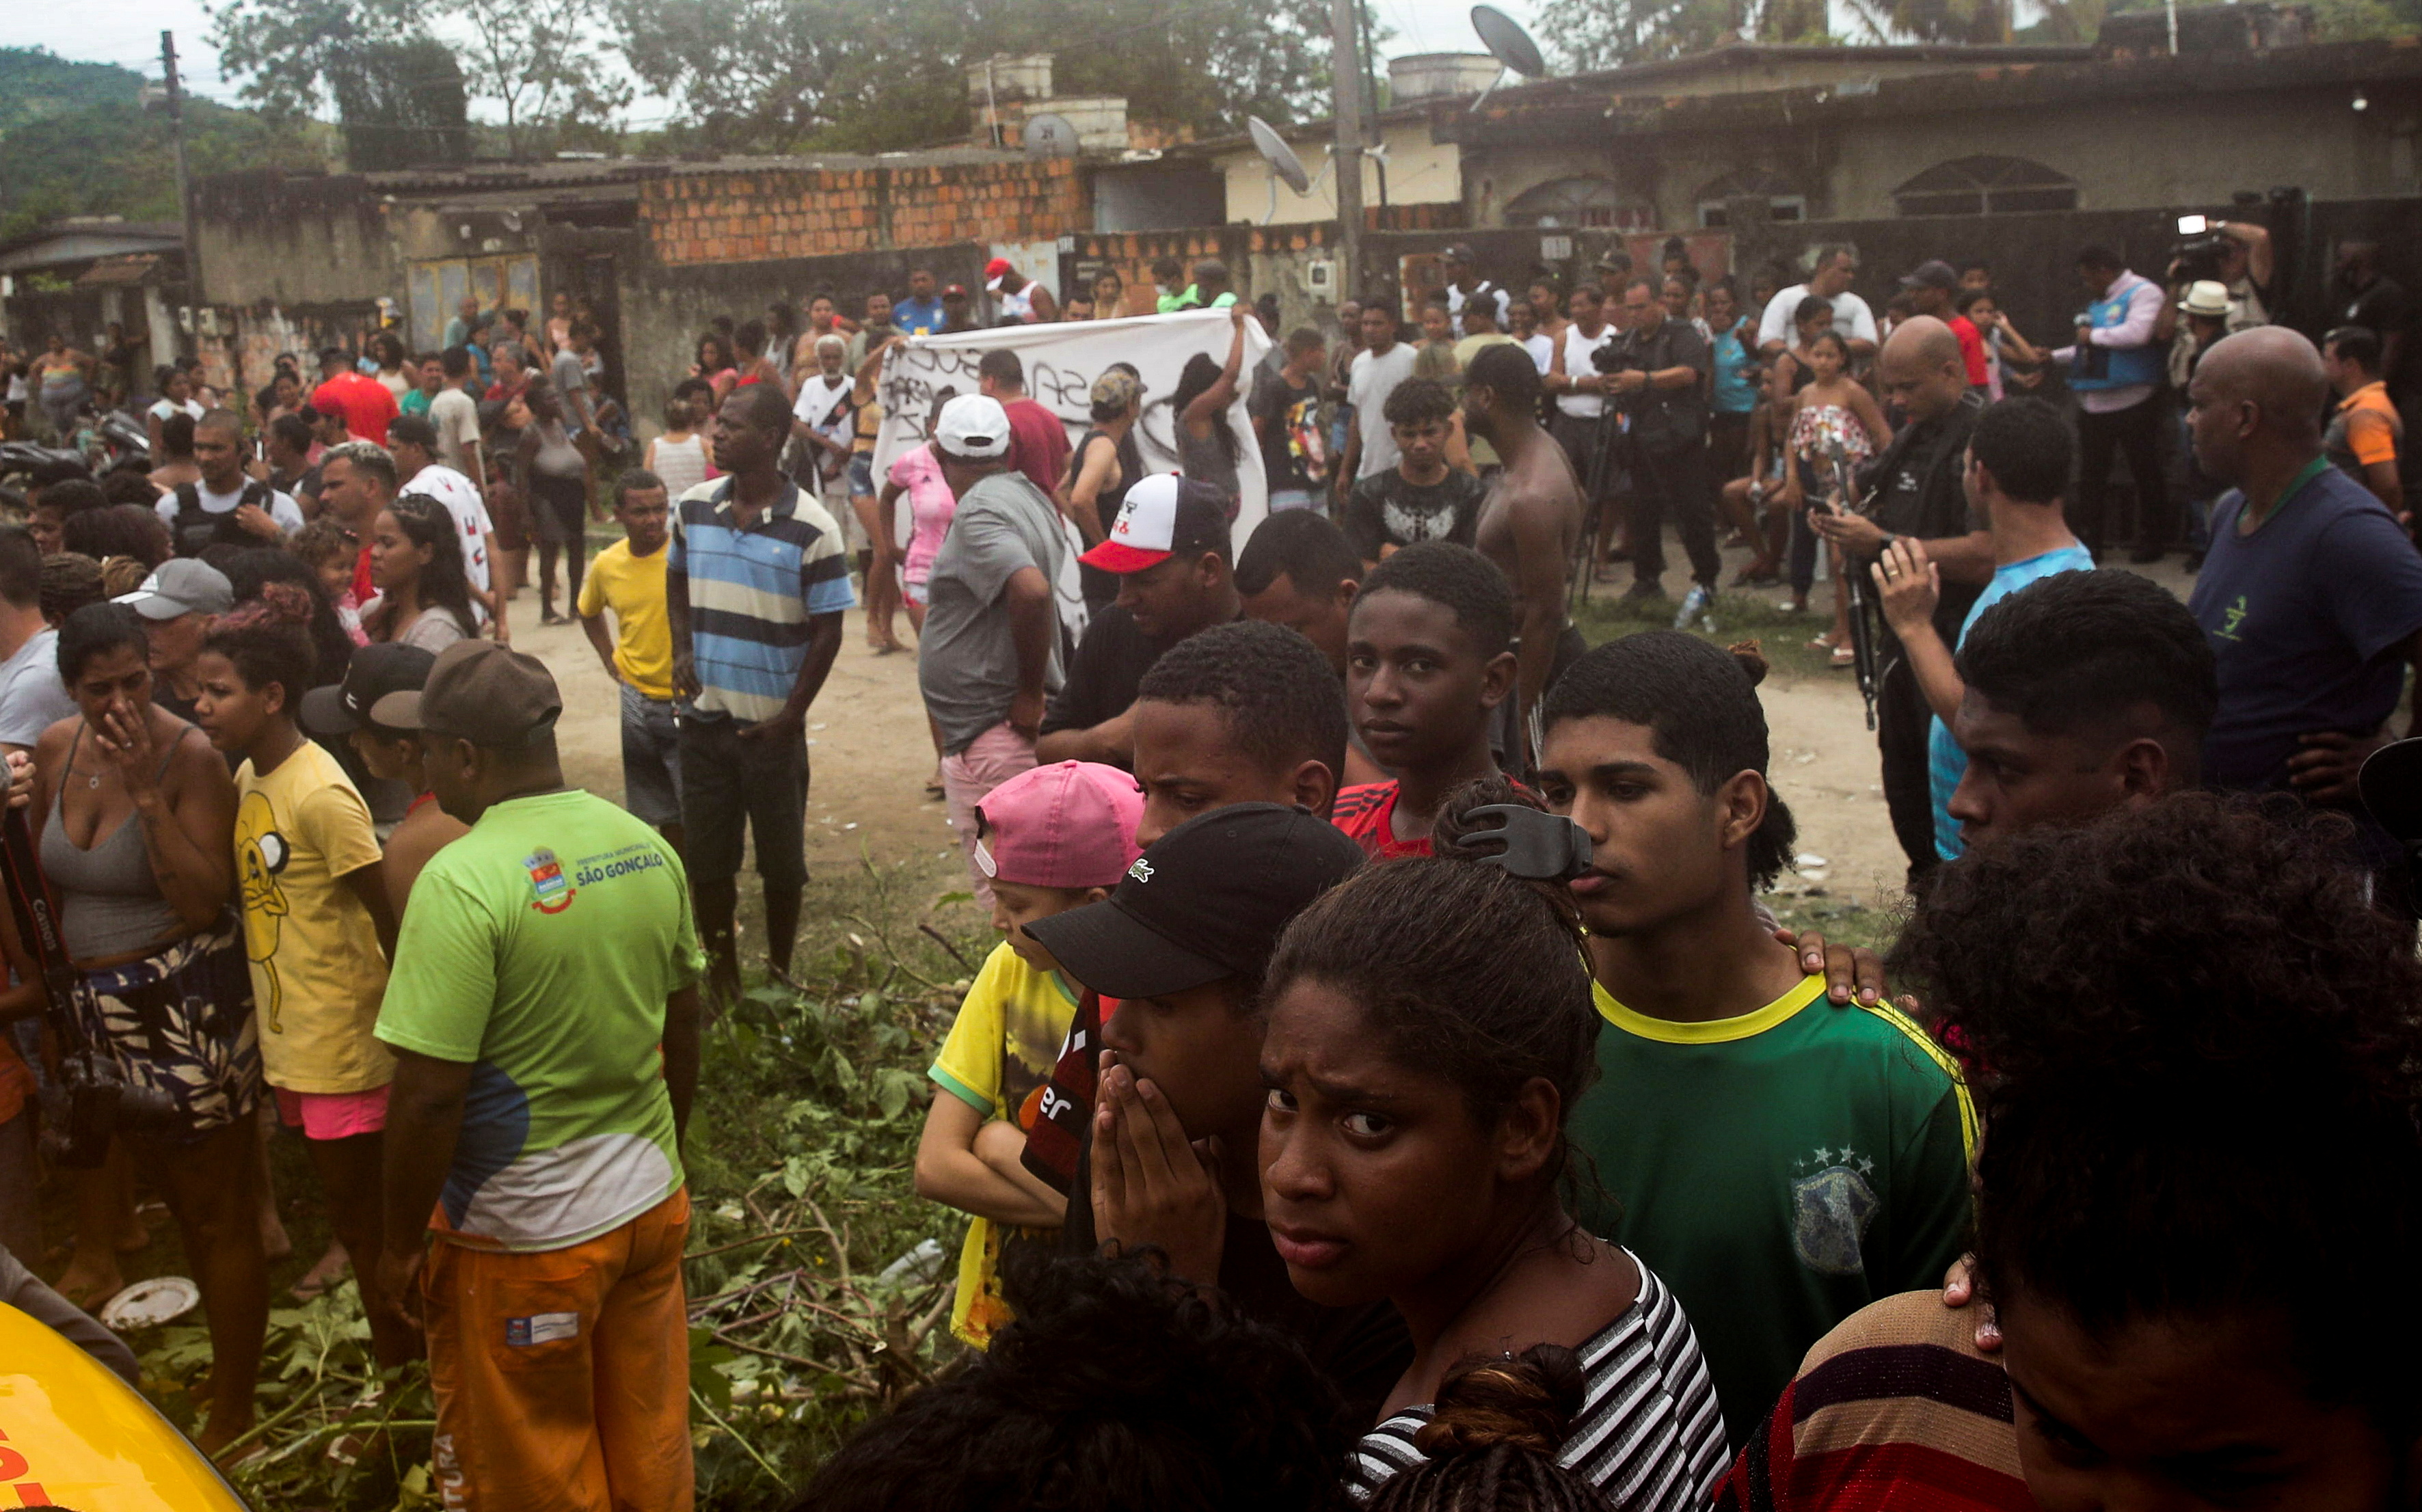 La gente se agolpa cerca del lugar del hecho (Foto: REUTERS/Ricardo Moraes)